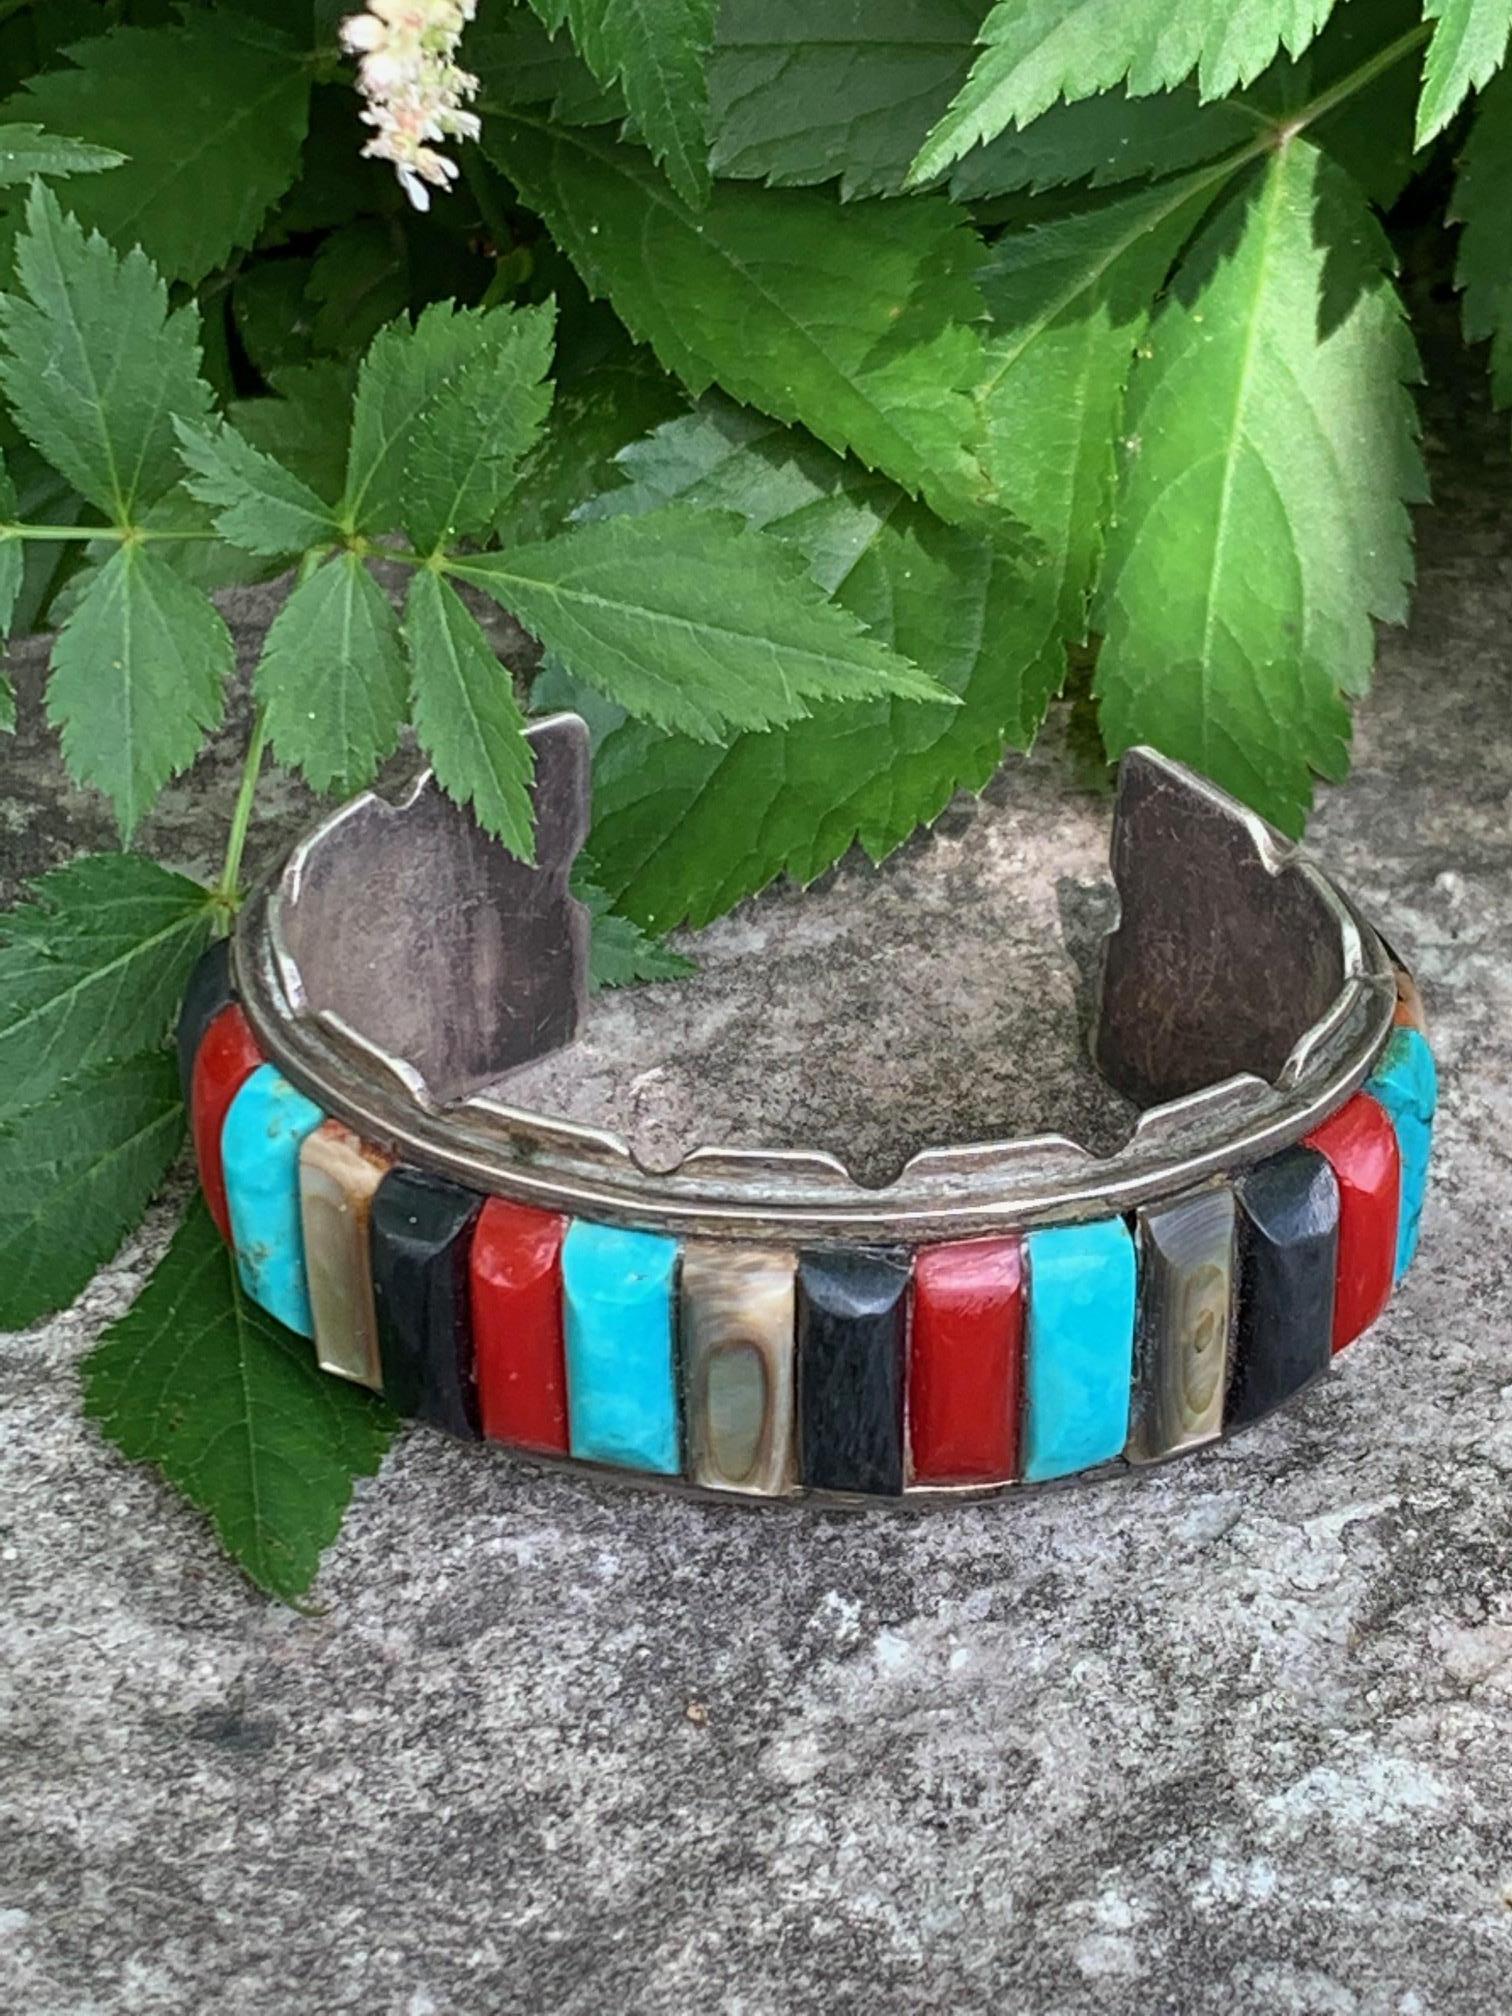 native american bracelets